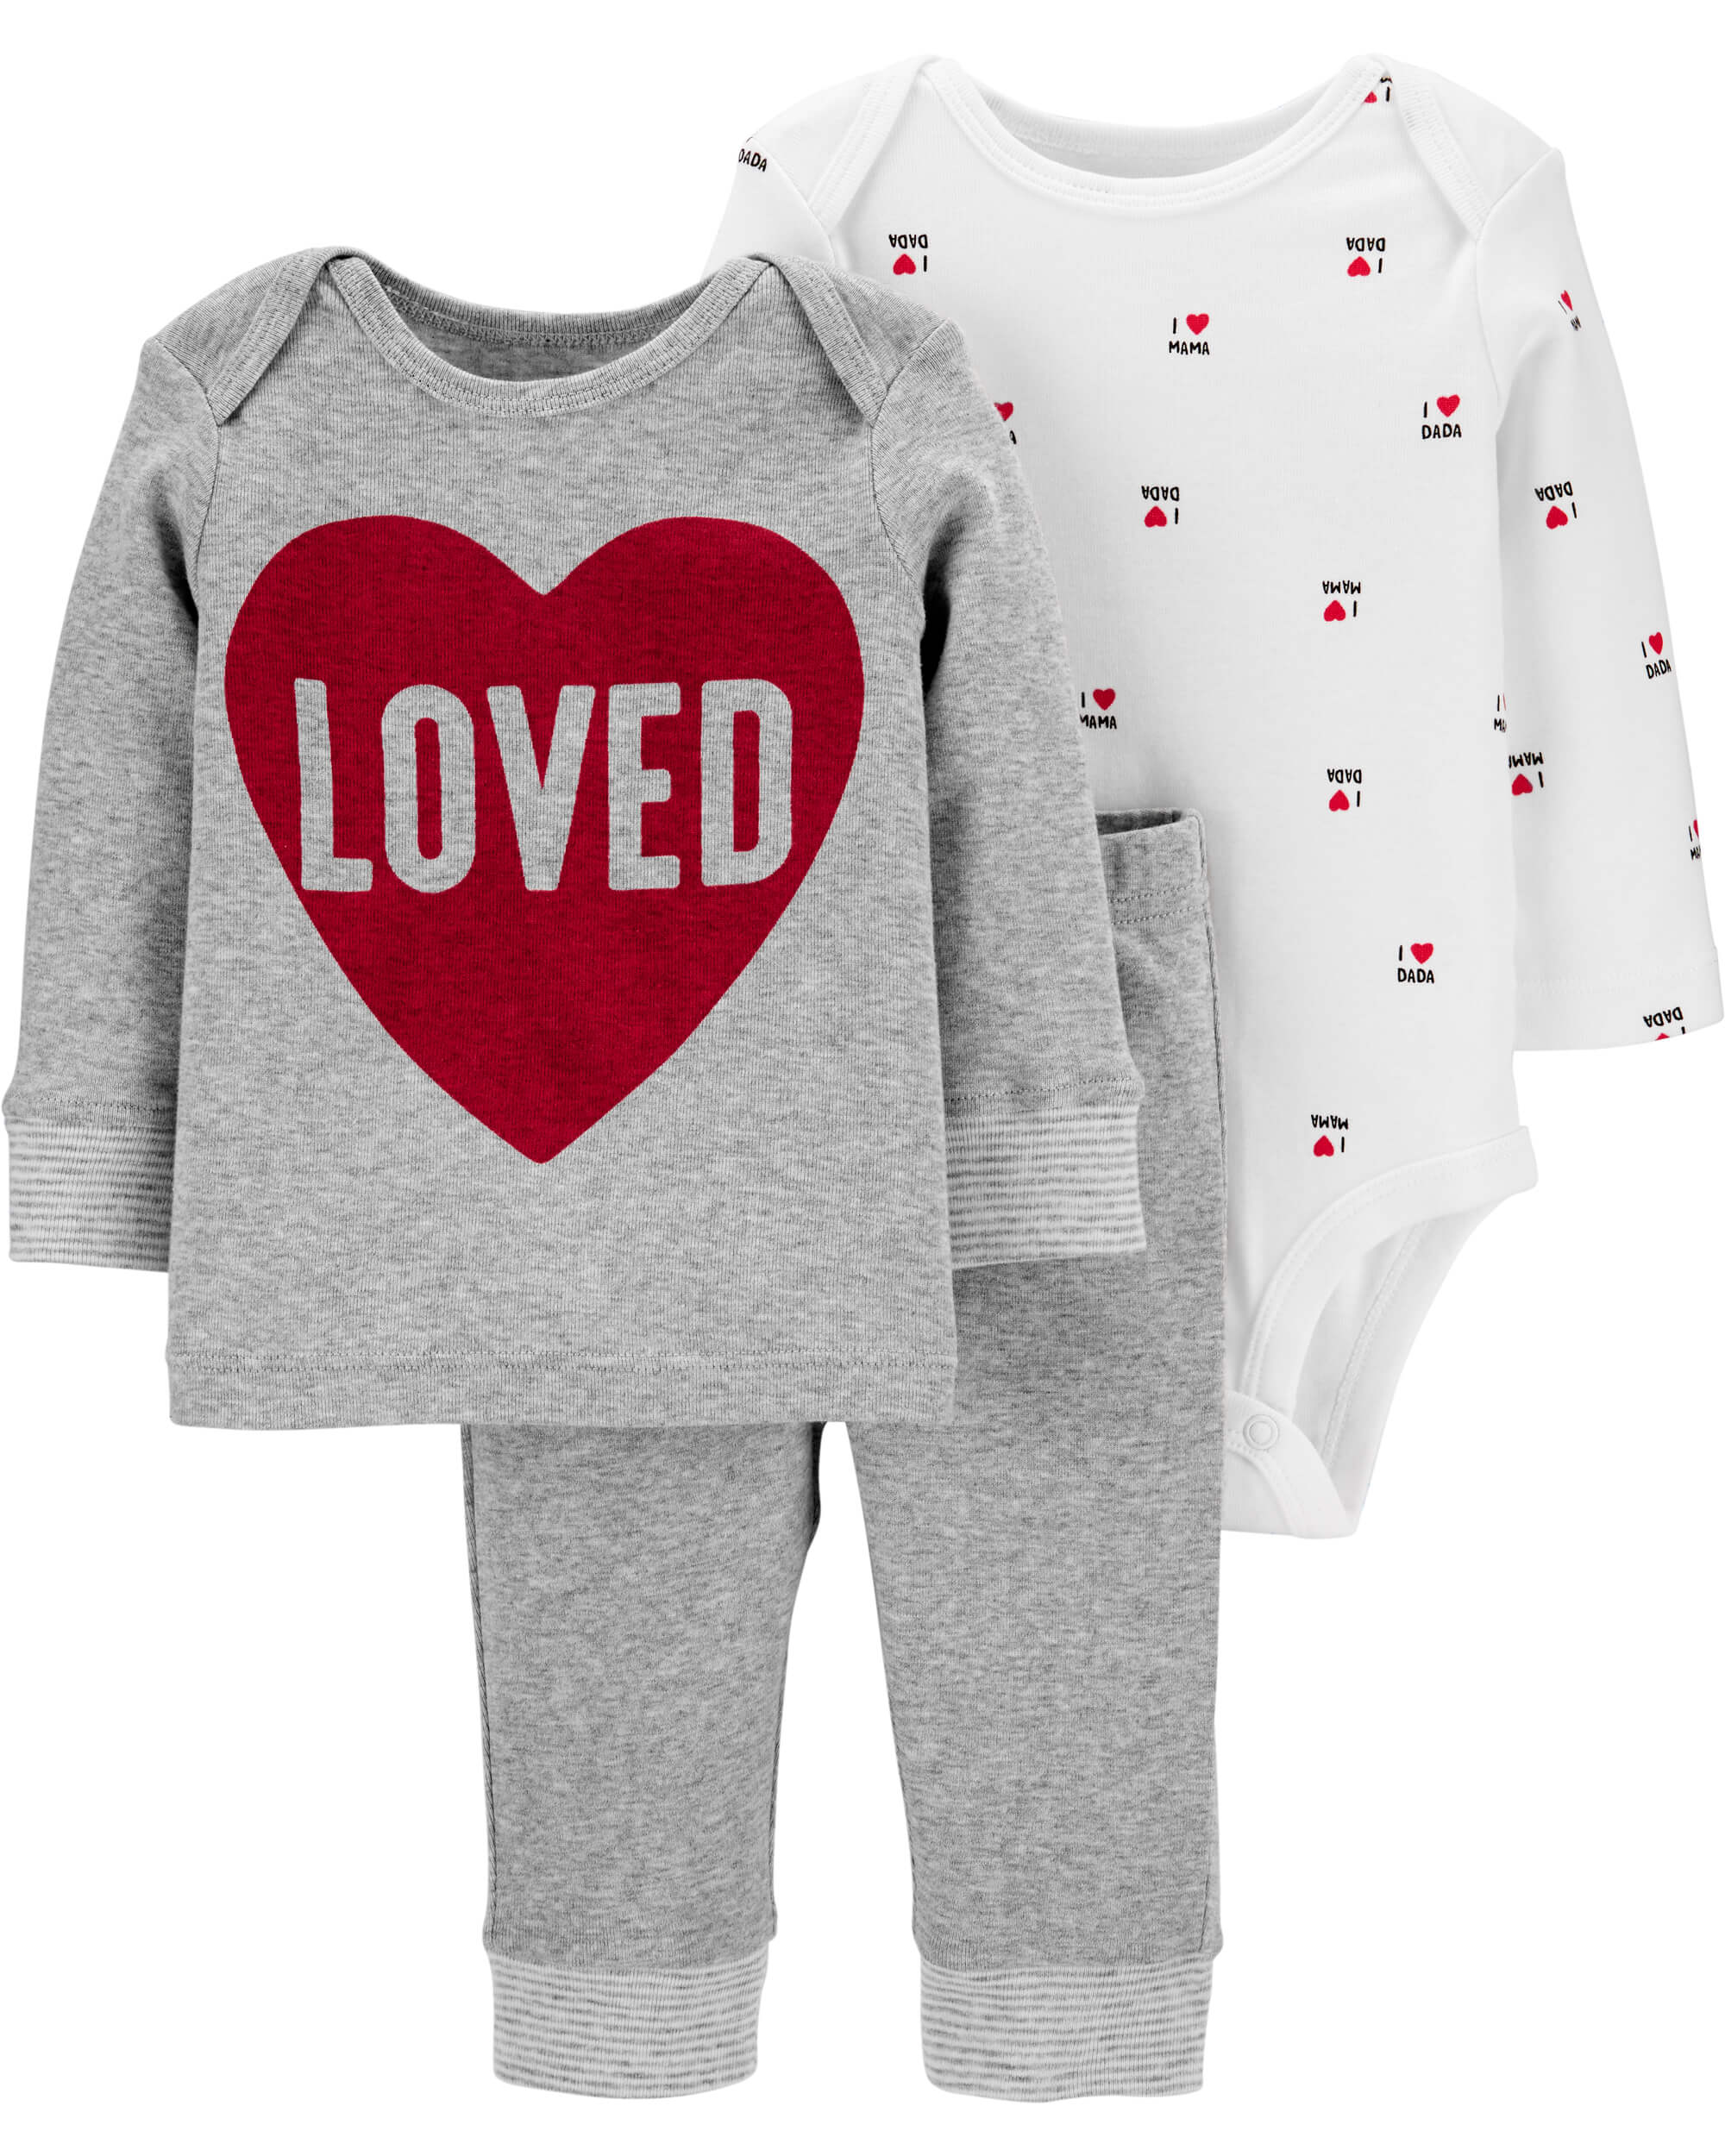 Carters: Family Matching Valentine’s Pajamas